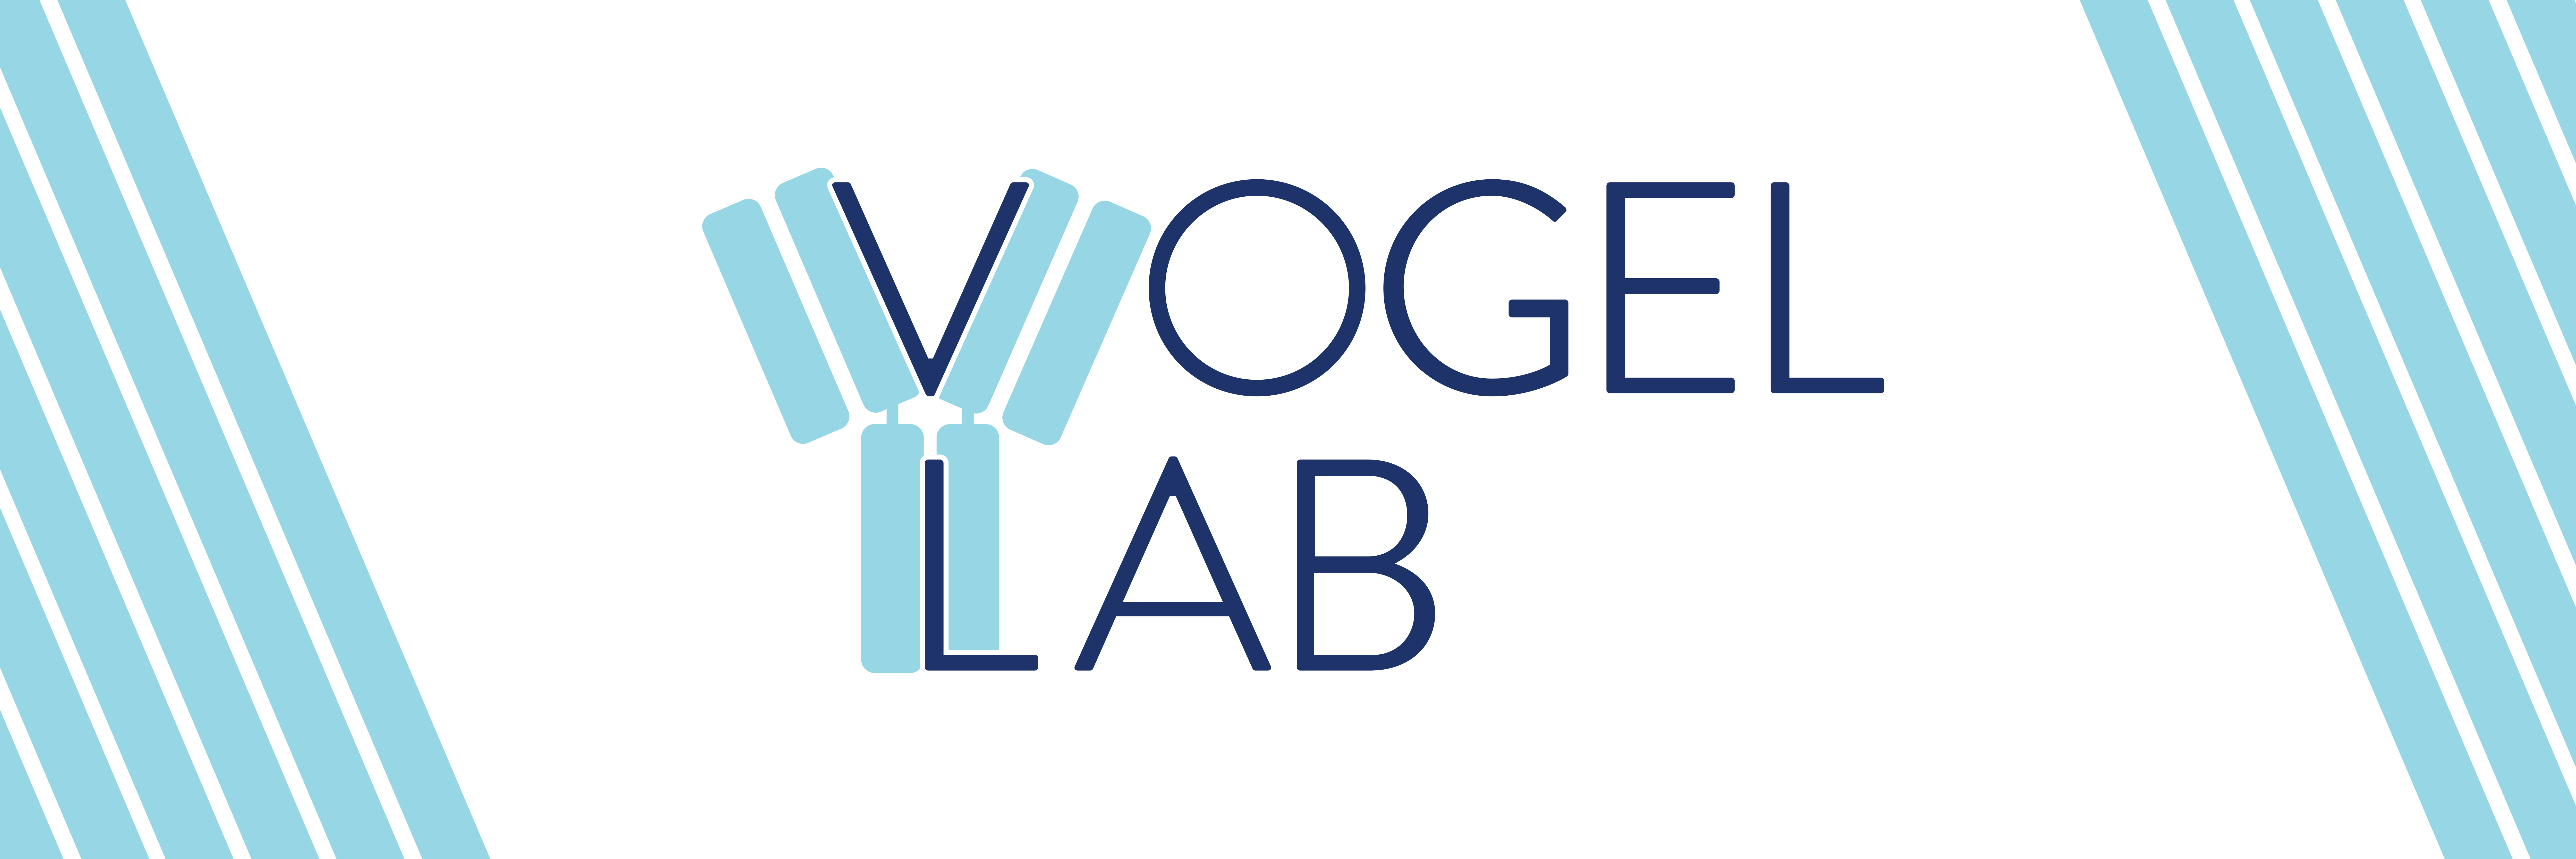 Vogel Lab twitter banner